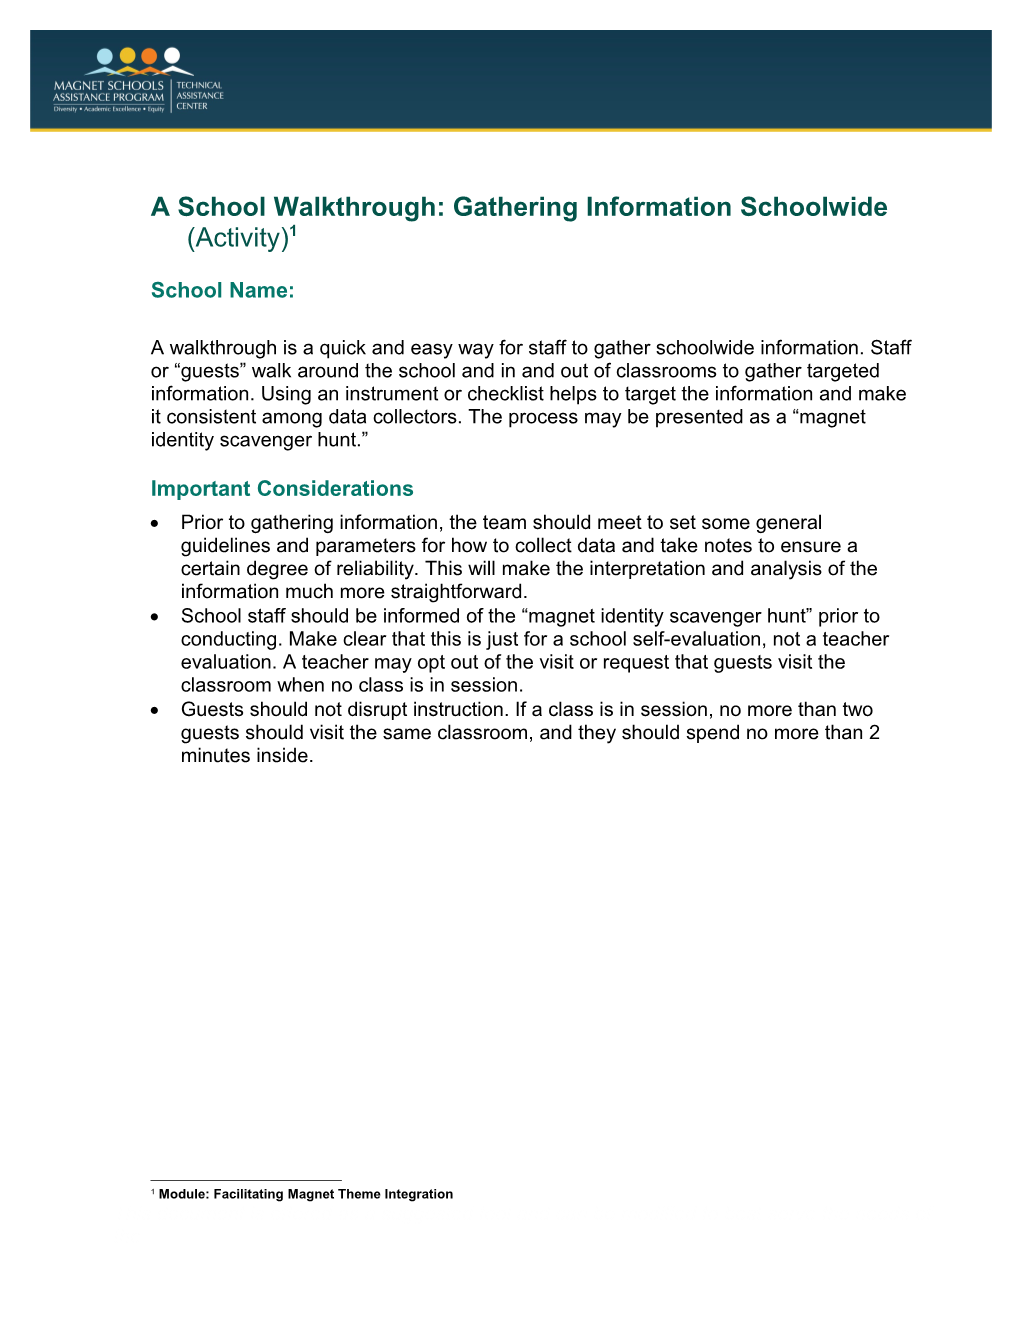 A School Walkthrough: Gathering Information Schoolwide (Activity)